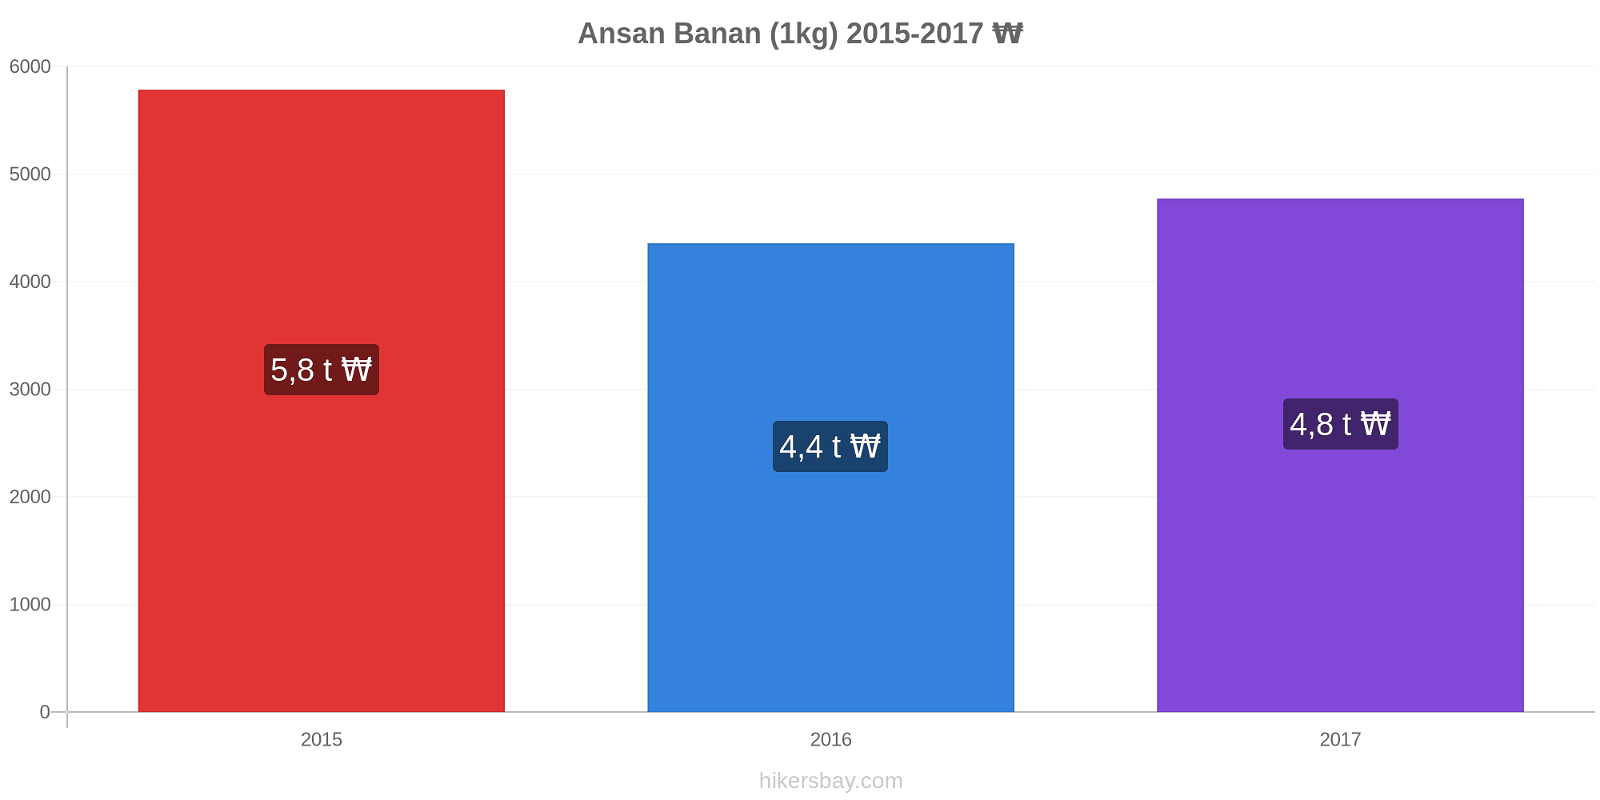 Ansan prisændringer Banan (1kg) hikersbay.com